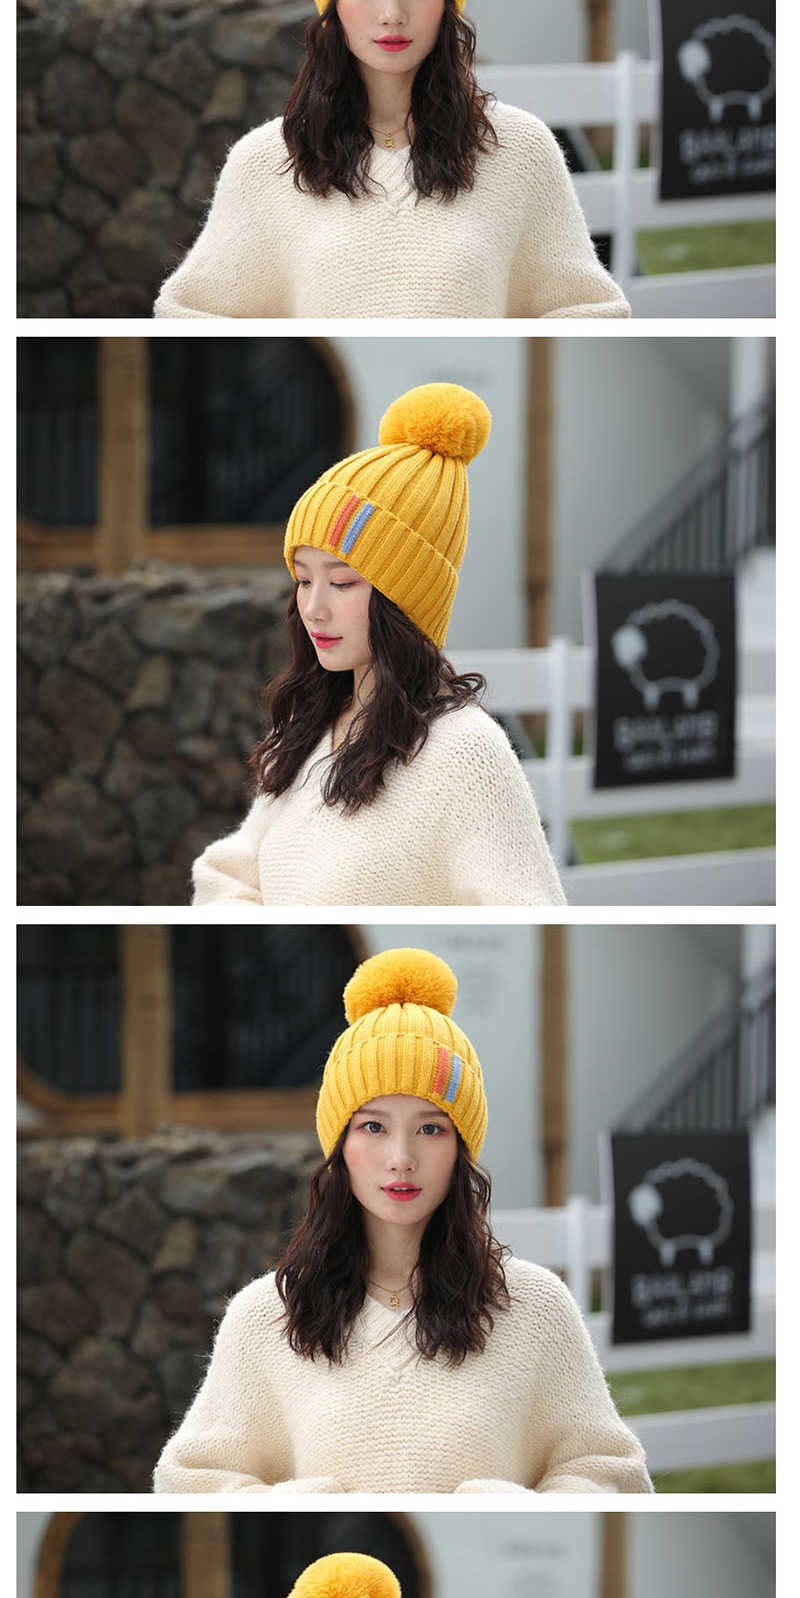 Fashion Yellow Contrast Striped Knit Wool Hat,Knitting Wool Hats